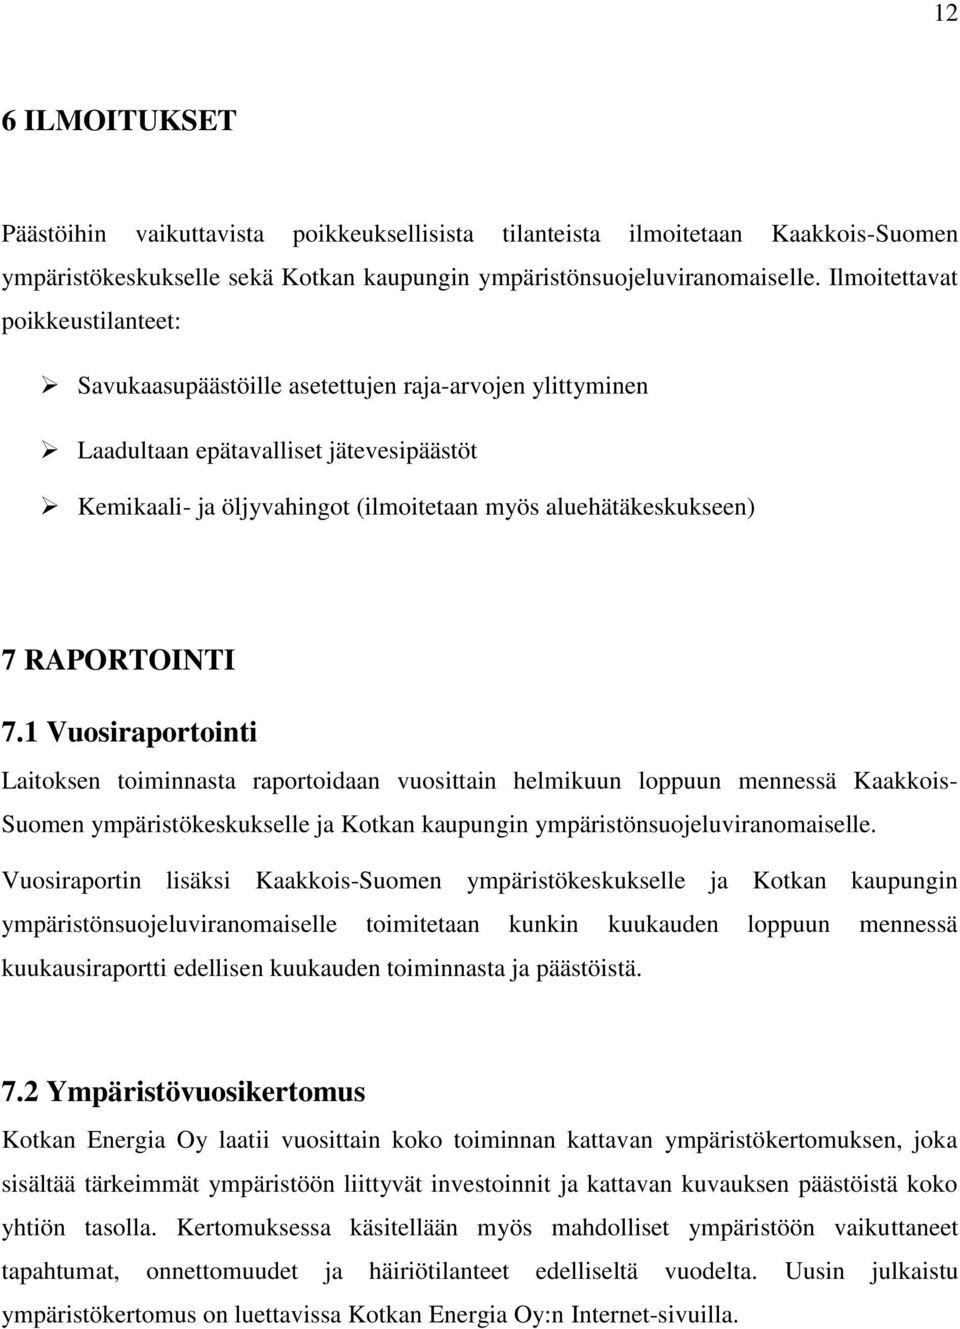 RAPORTOINTI 7.1 Vuosiraportointi Laitoksen toiminnasta raportoidaan vuosittain helmikuun loppuun mennessä Kaakkois- Suomen ympäristökeskukselle ja Kotkan kaupungin ympäristönsuojeluviranomaiselle.